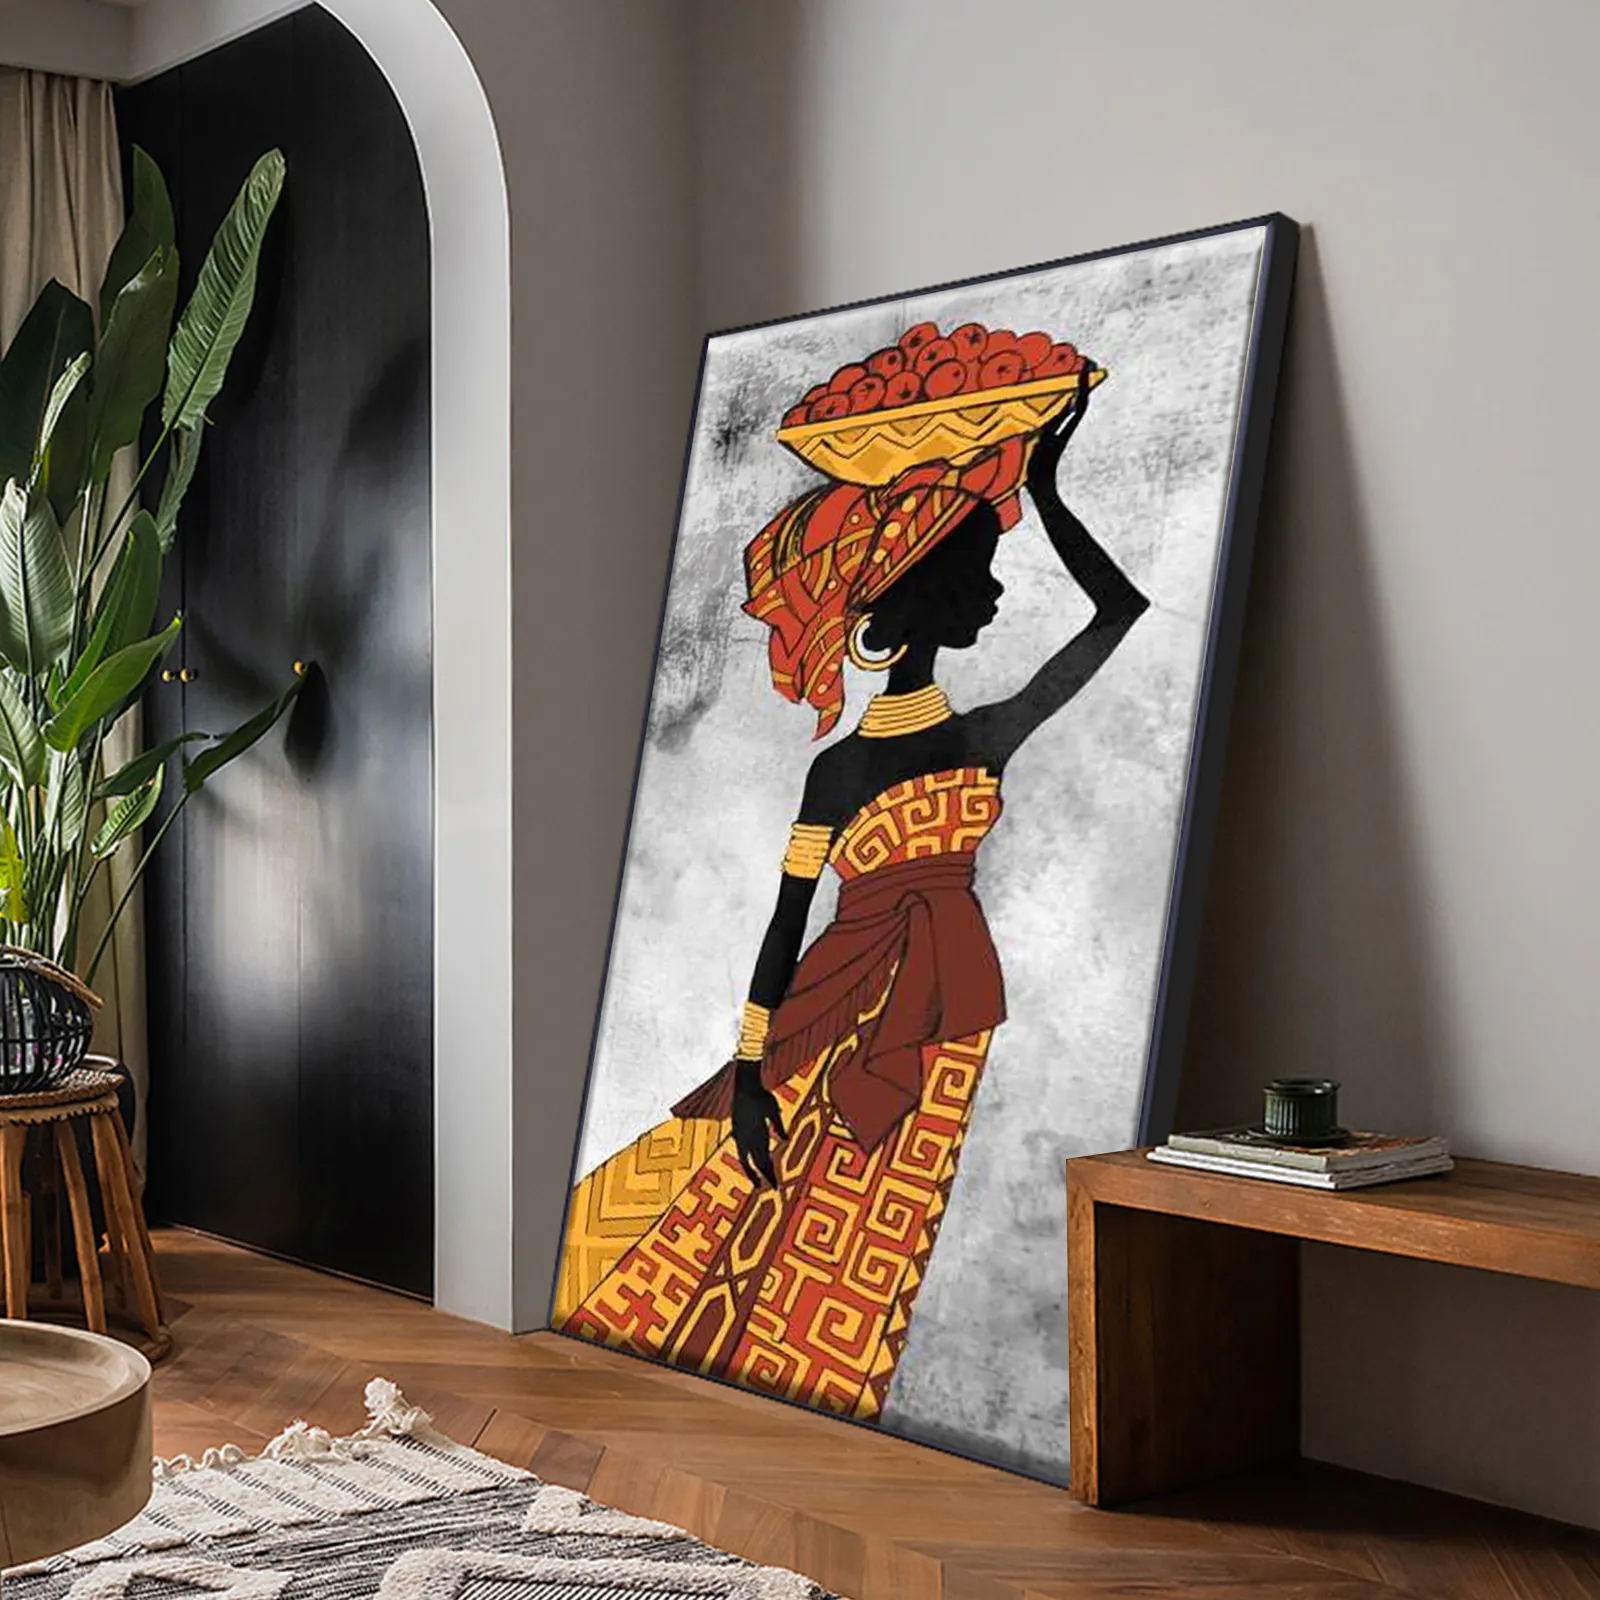 Peintures d'art Tribal Etnicos africains, affiche de danse de femmes noires, peinture sur toile imprimée, tableau d'art abstrait pour décoration murale de maison, 306o